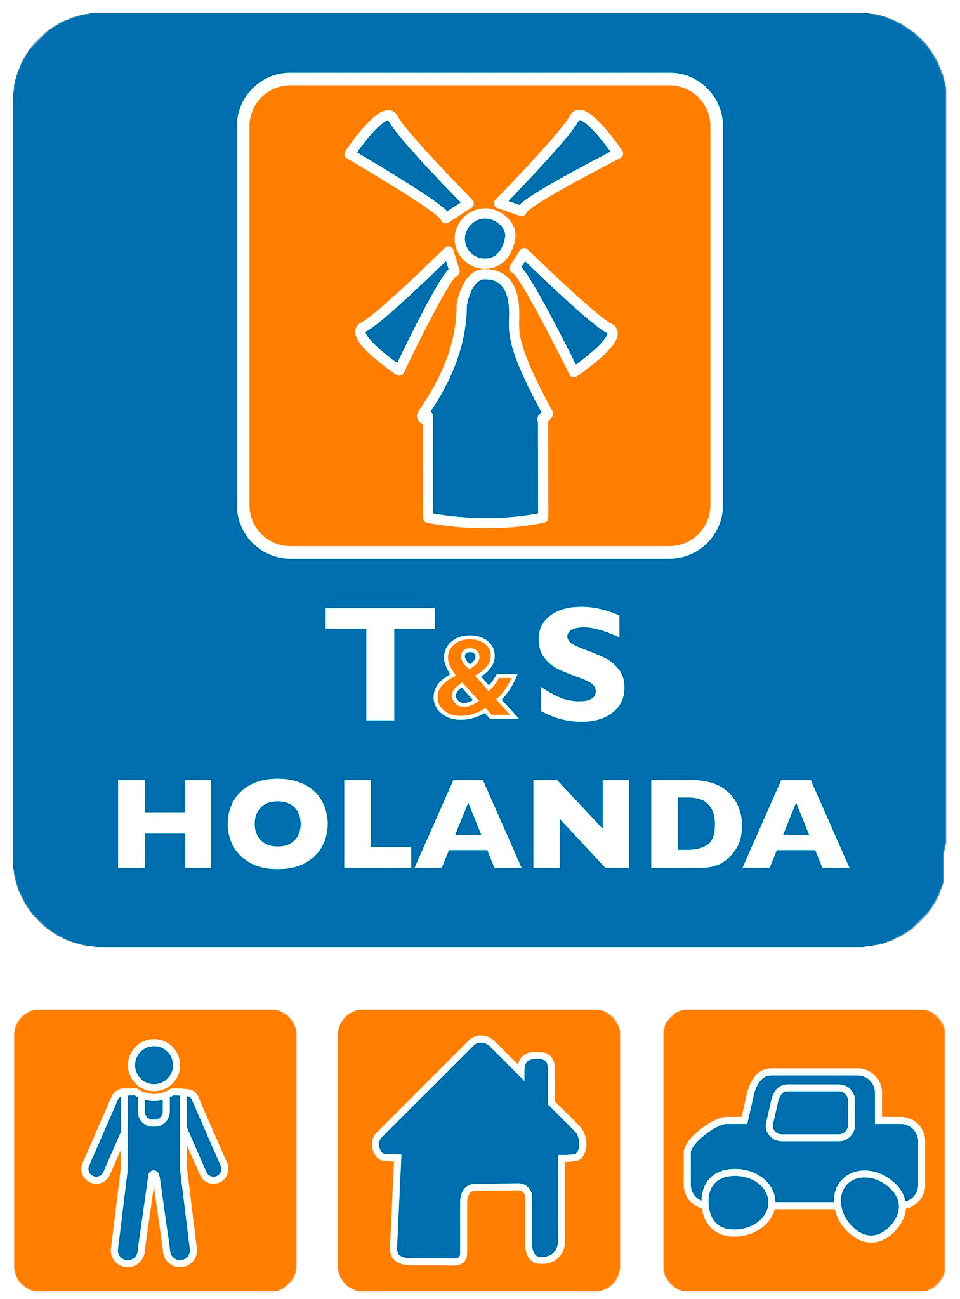 TenS Holanda